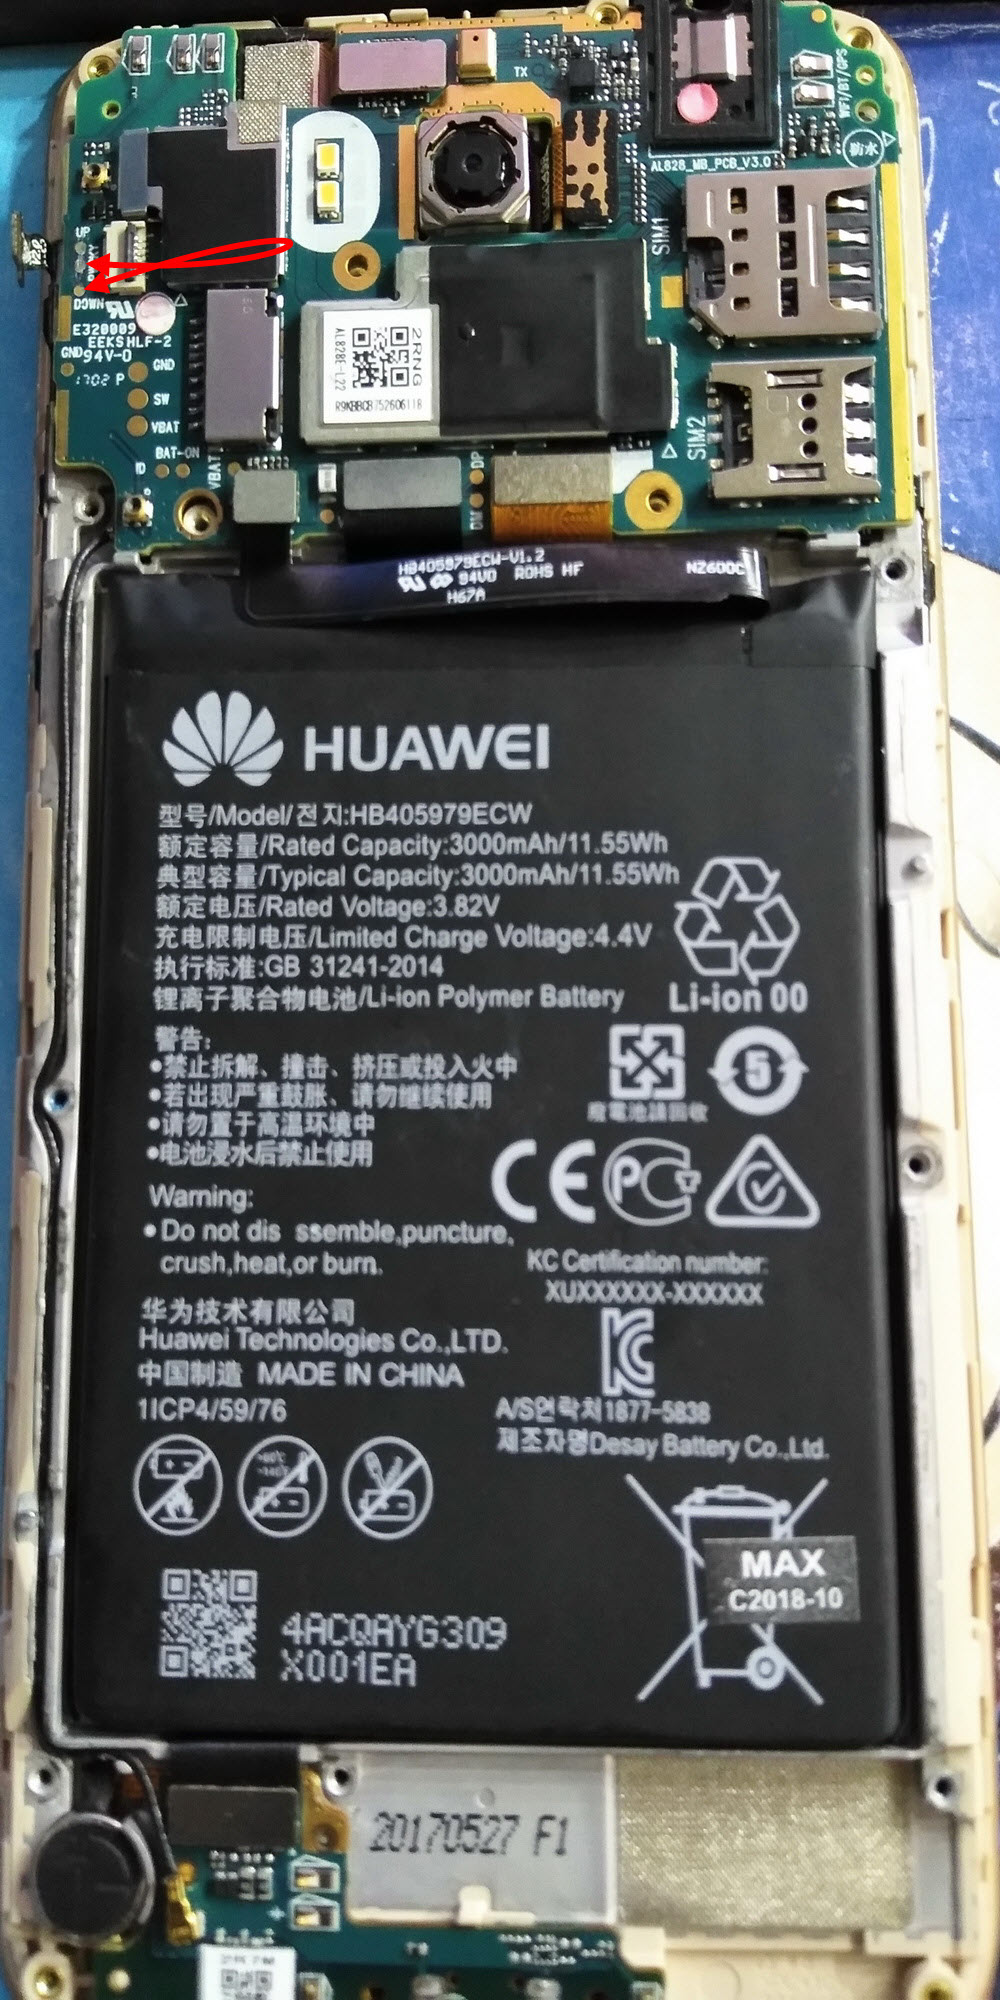      Huawei Y5 -2017